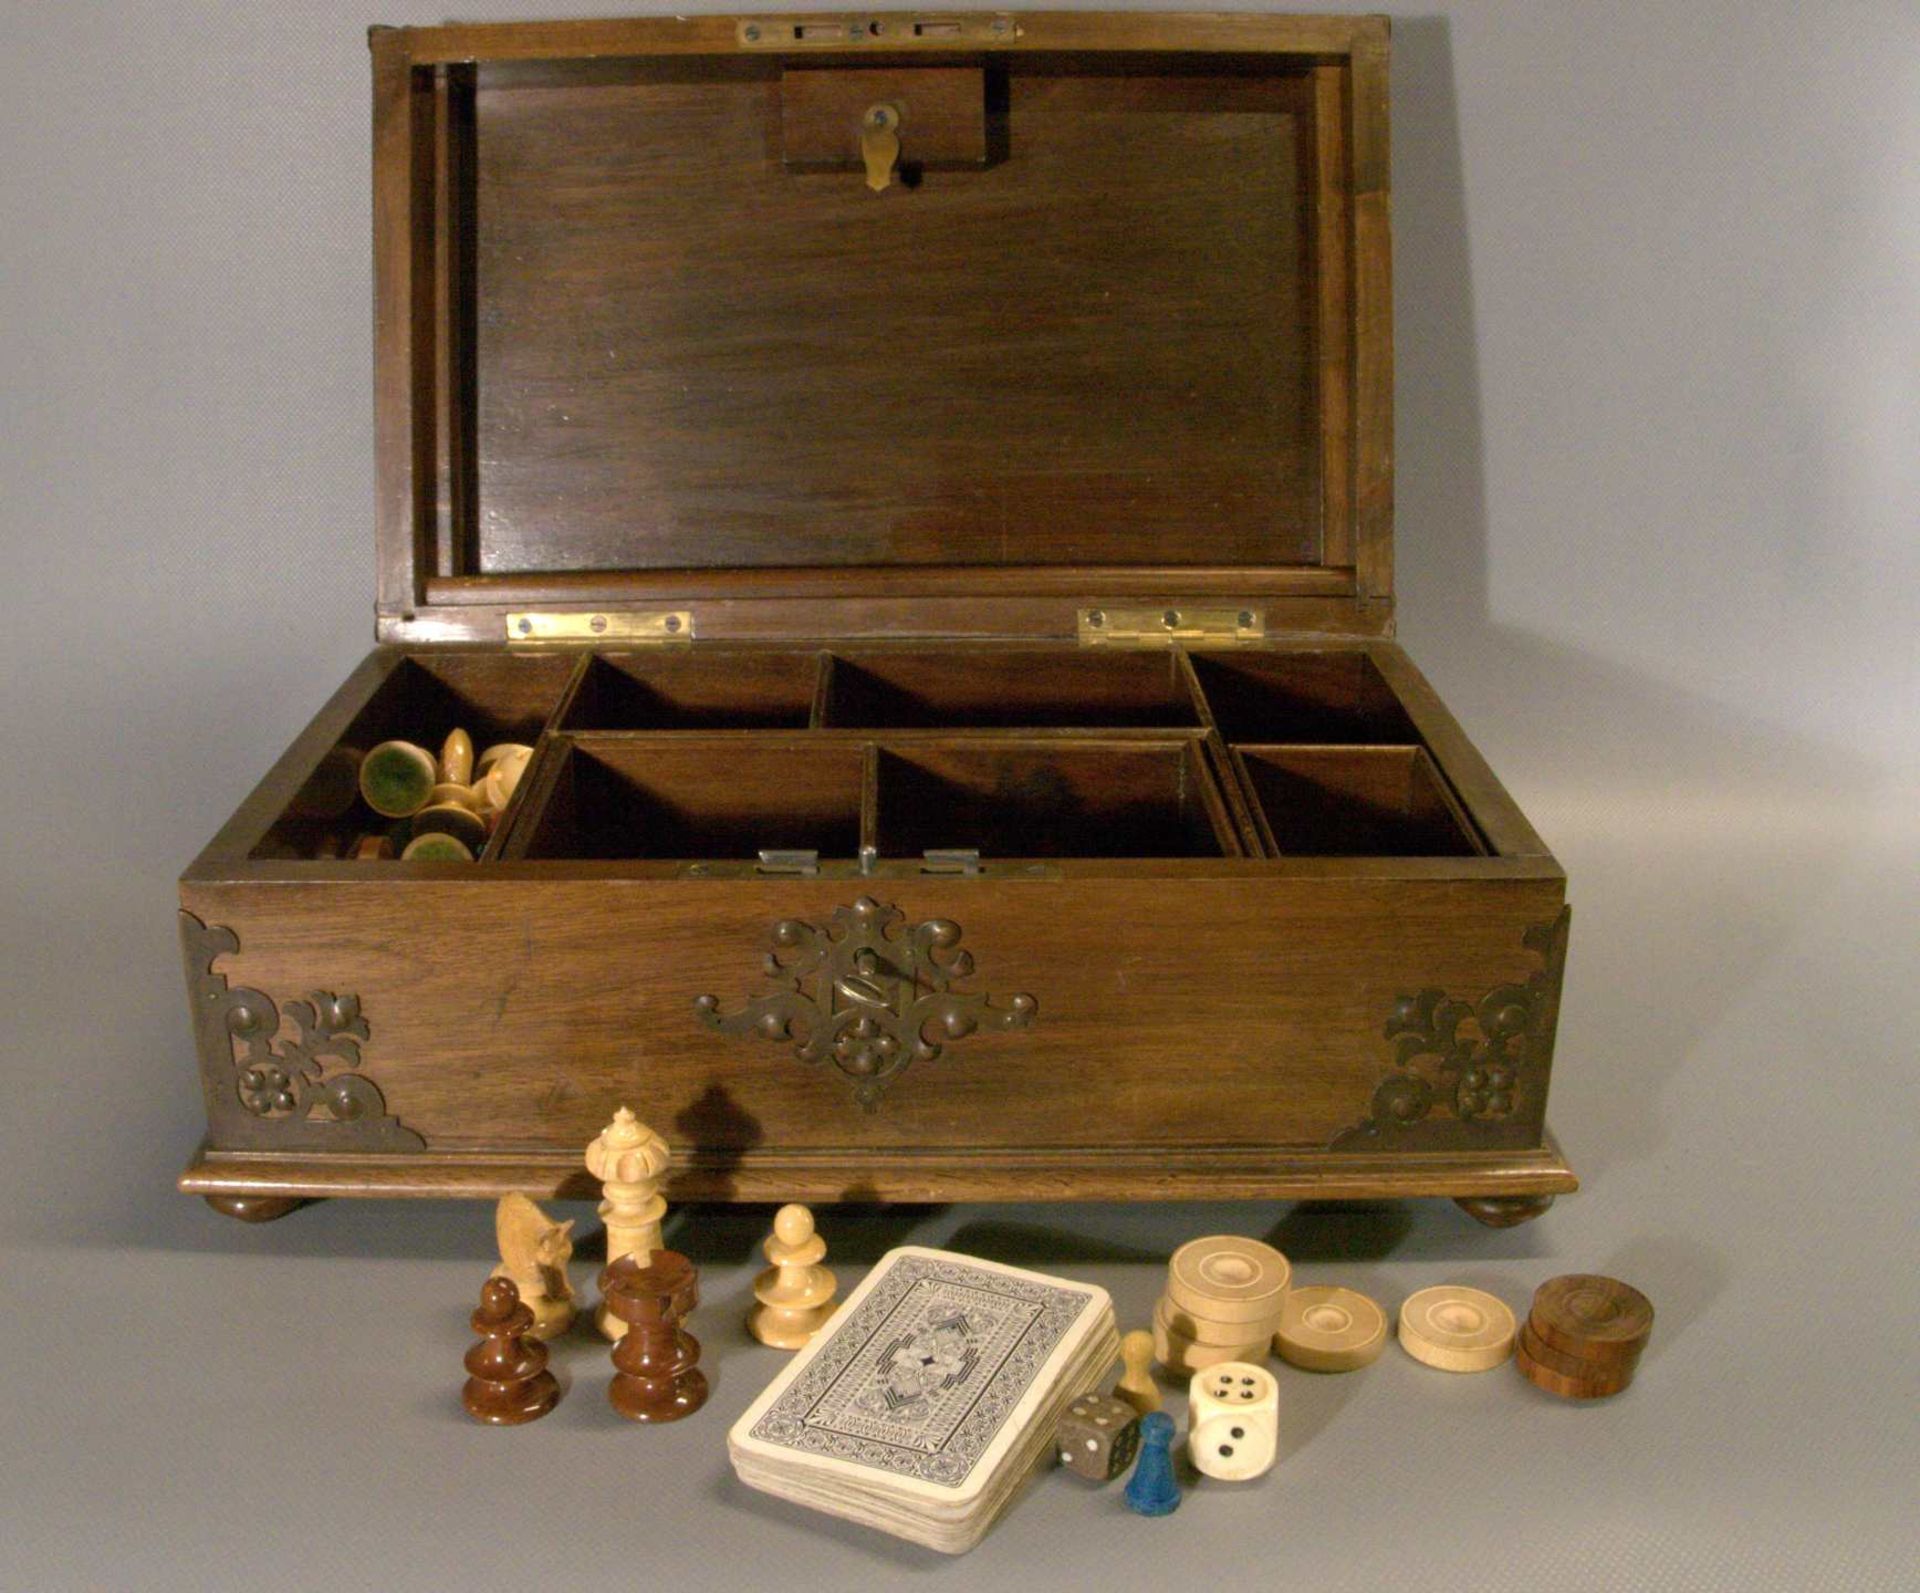 Holzkasten mit verschiedenen Spielen (Schach, Mühle, etc.) Metallbeschläge, mit Schlüssel, - Image 3 of 3